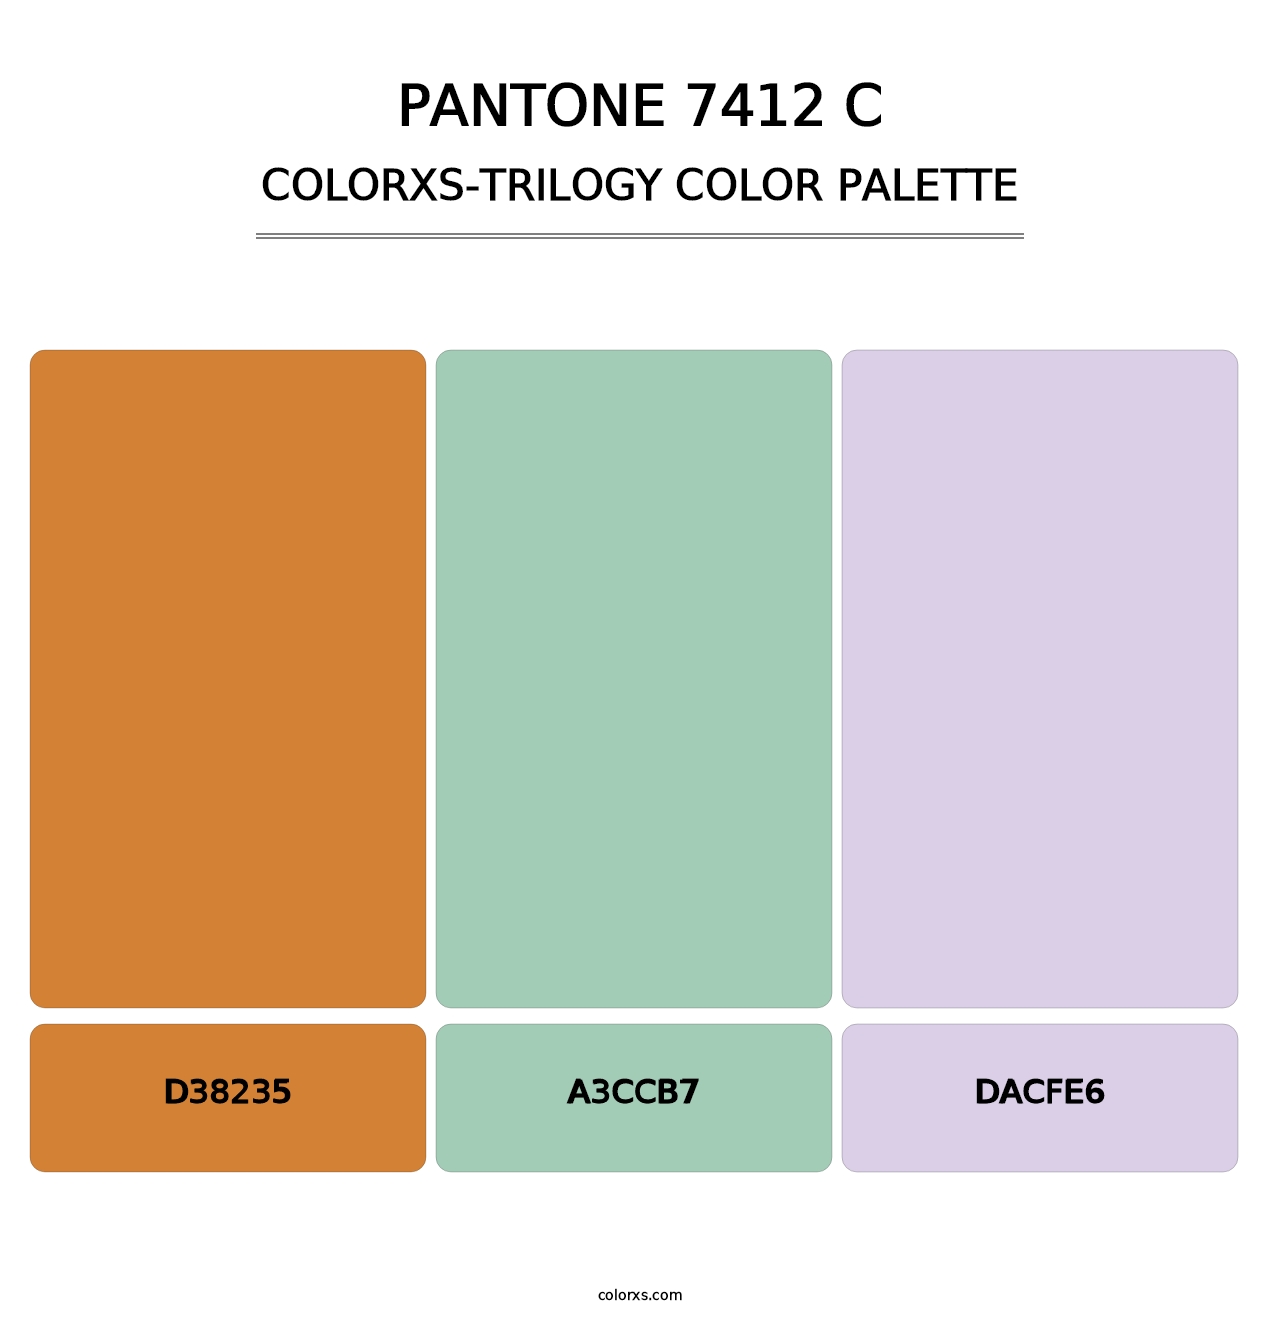 PANTONE 7412 C - Colorxs Trilogy Palette